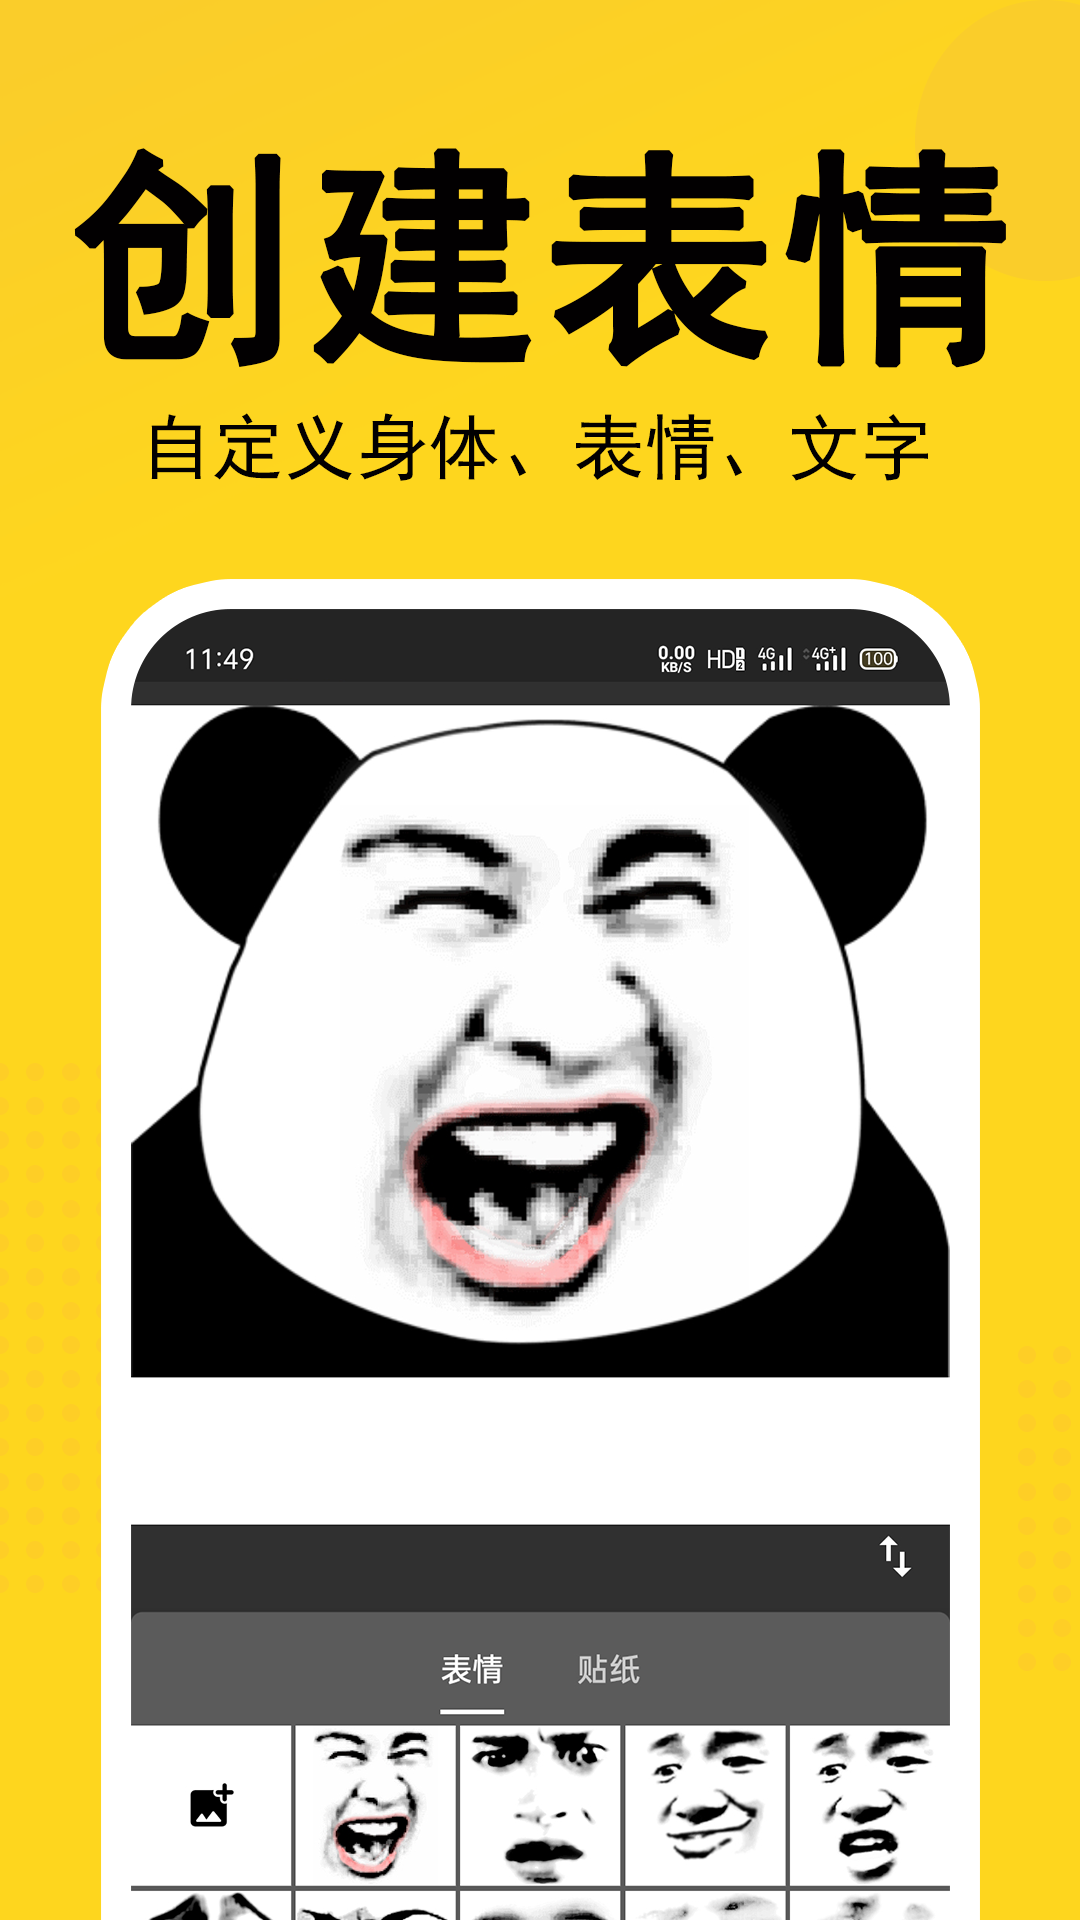 熊猫表情包截图(1)